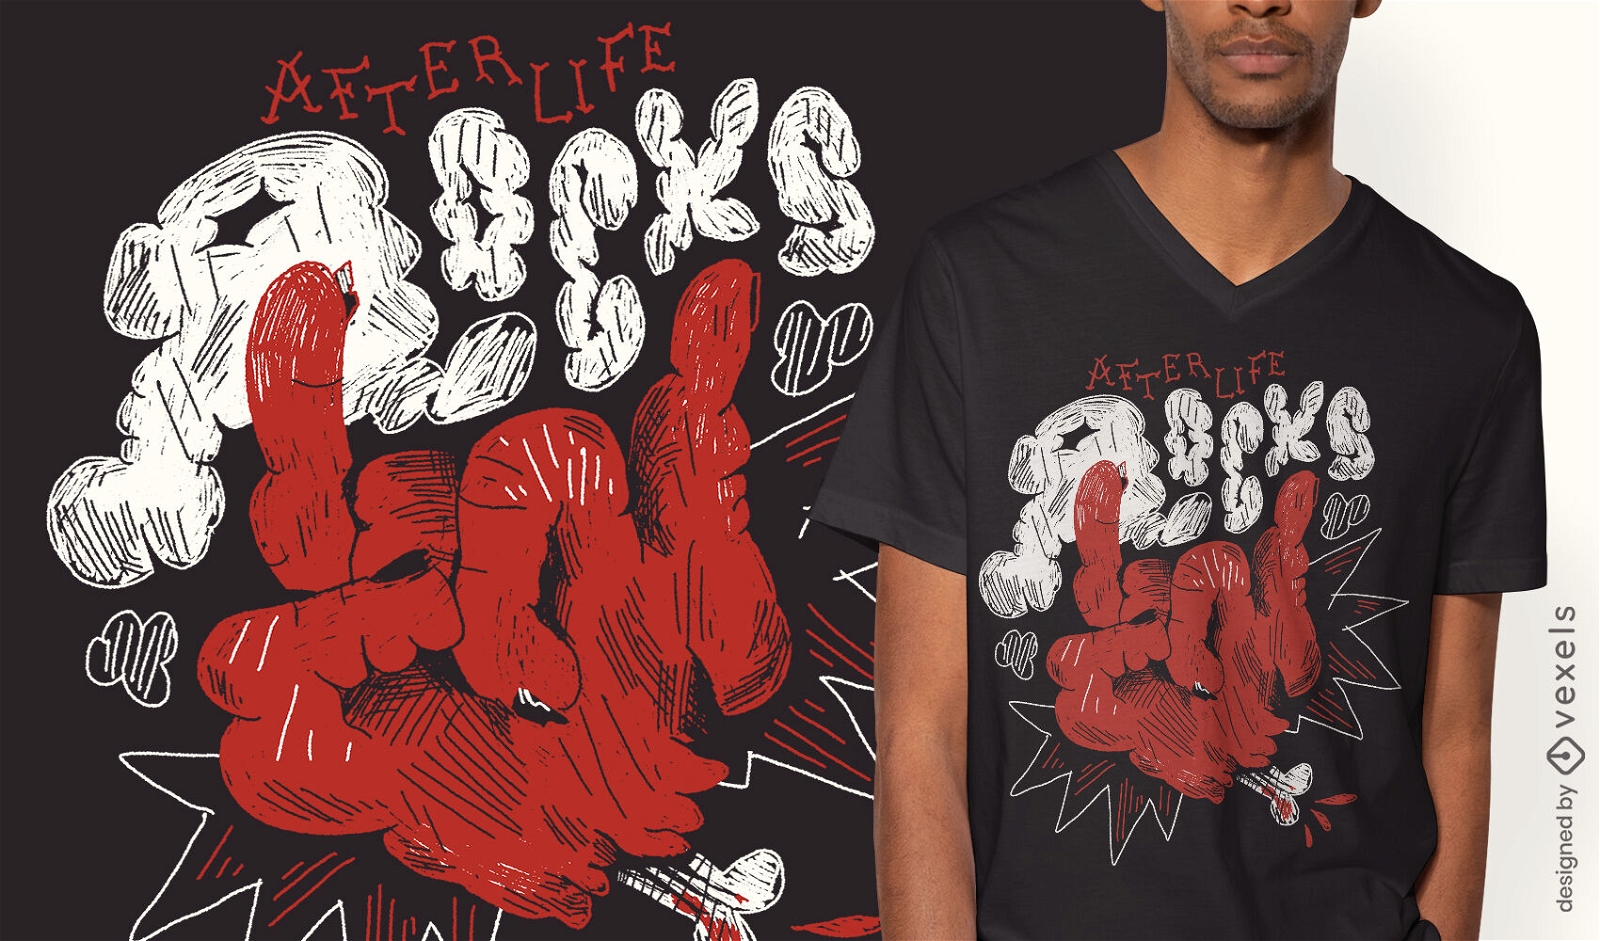 Afterlife rocks t-shirt design